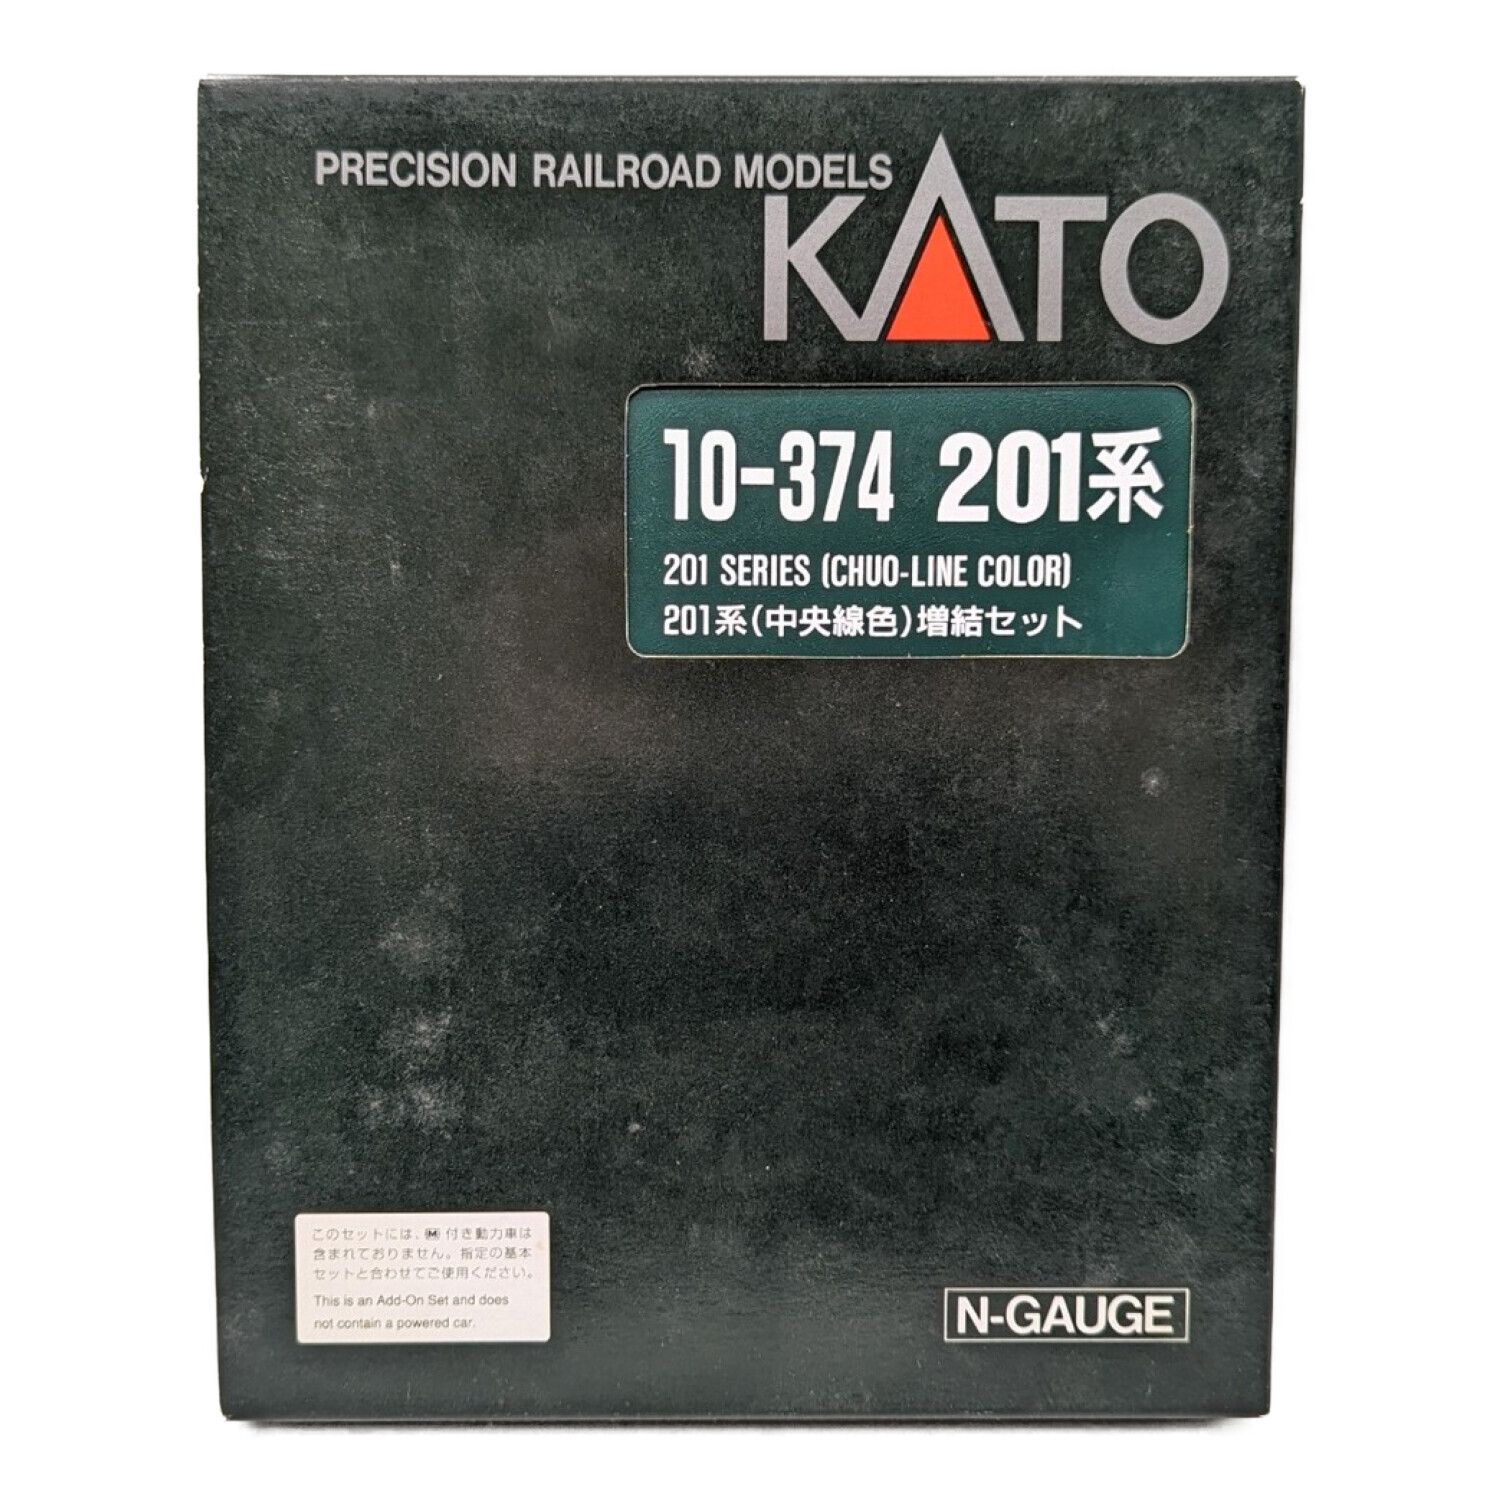 KATO (カトー) Nゲージ 10-374 201系(中央線色) 増結セット